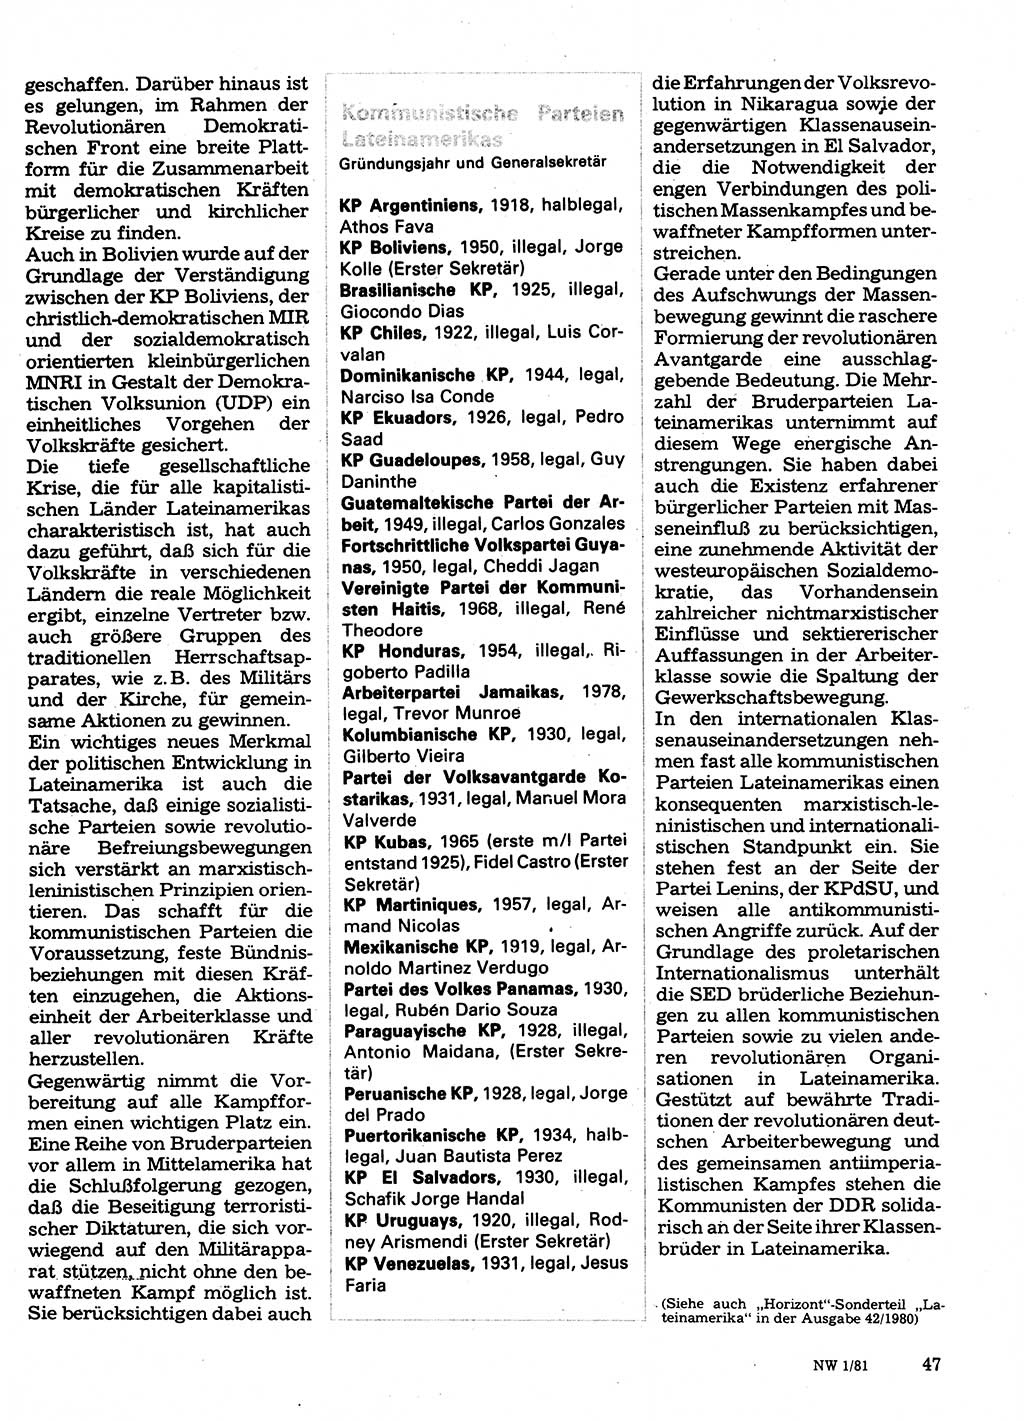 Neuer Weg (NW), Organ des Zentralkomitees (ZK) der SED (Sozialistische Einheitspartei Deutschlands) für Fragen des Parteilebens, 36. Jahrgang [Deutsche Demokratische Republik (DDR)] 1981, Seite 47 (NW ZK SED DDR 1981, S. 47)